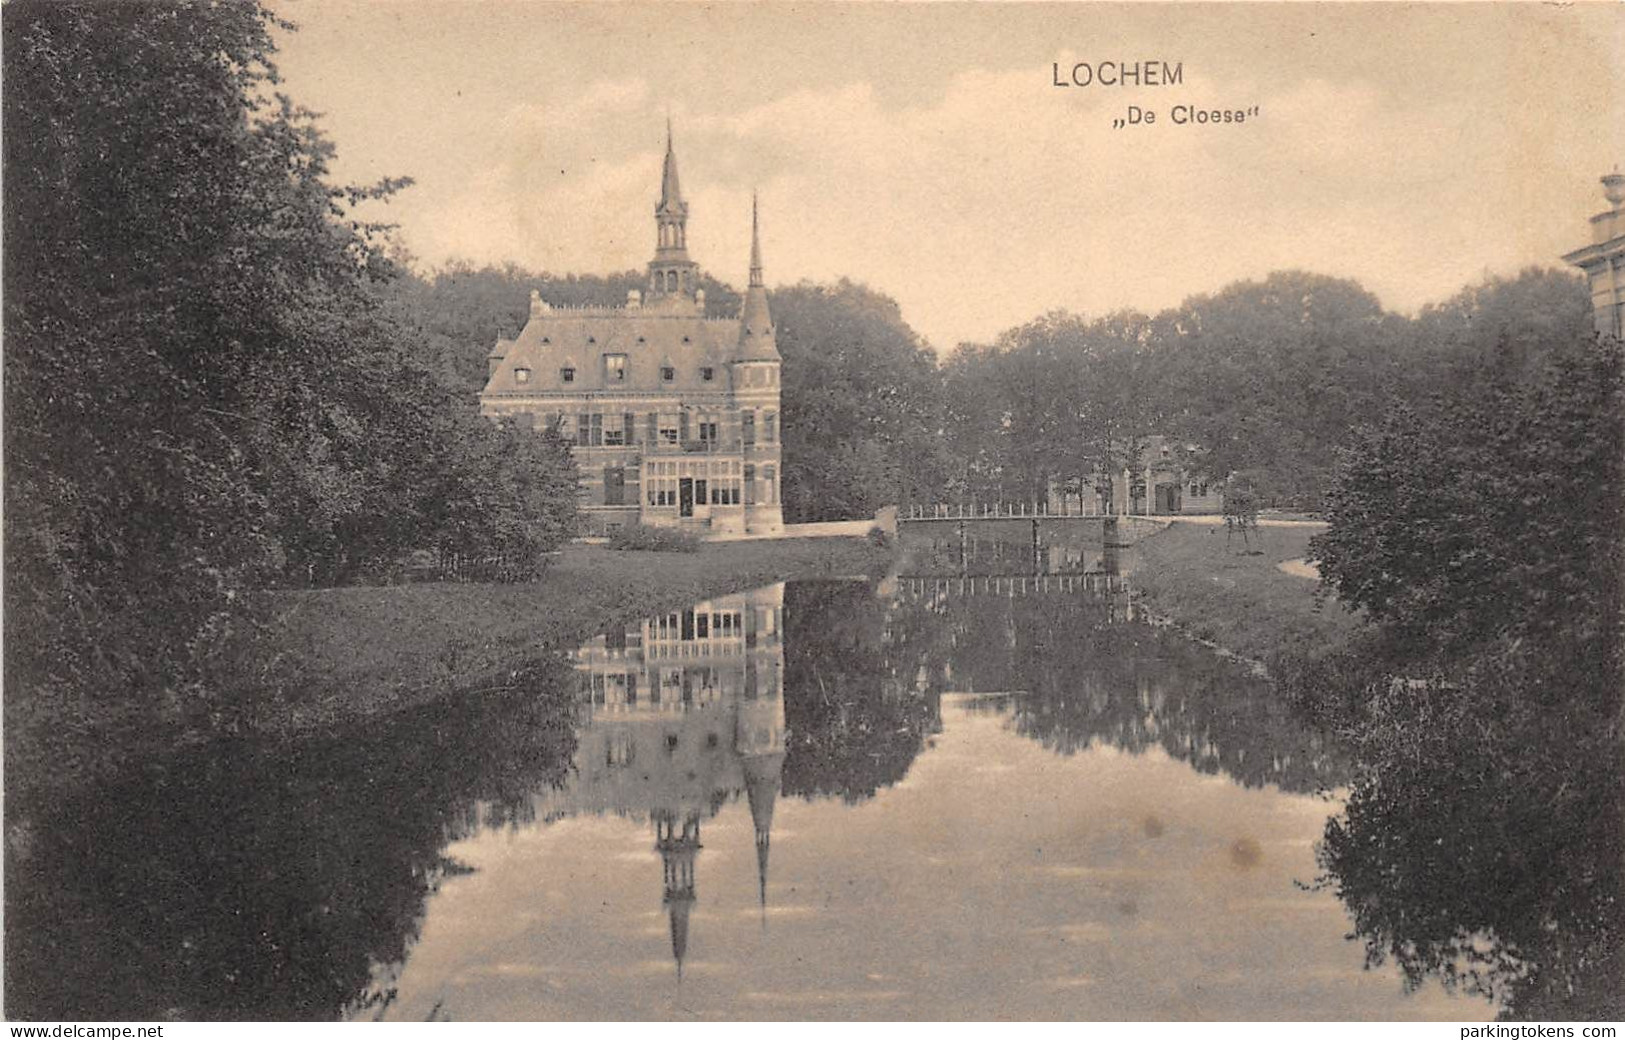 E759 - Lochem De Cloese - Vol Formaat Kaart 1912 - Uitgave Schepers - - Lochem